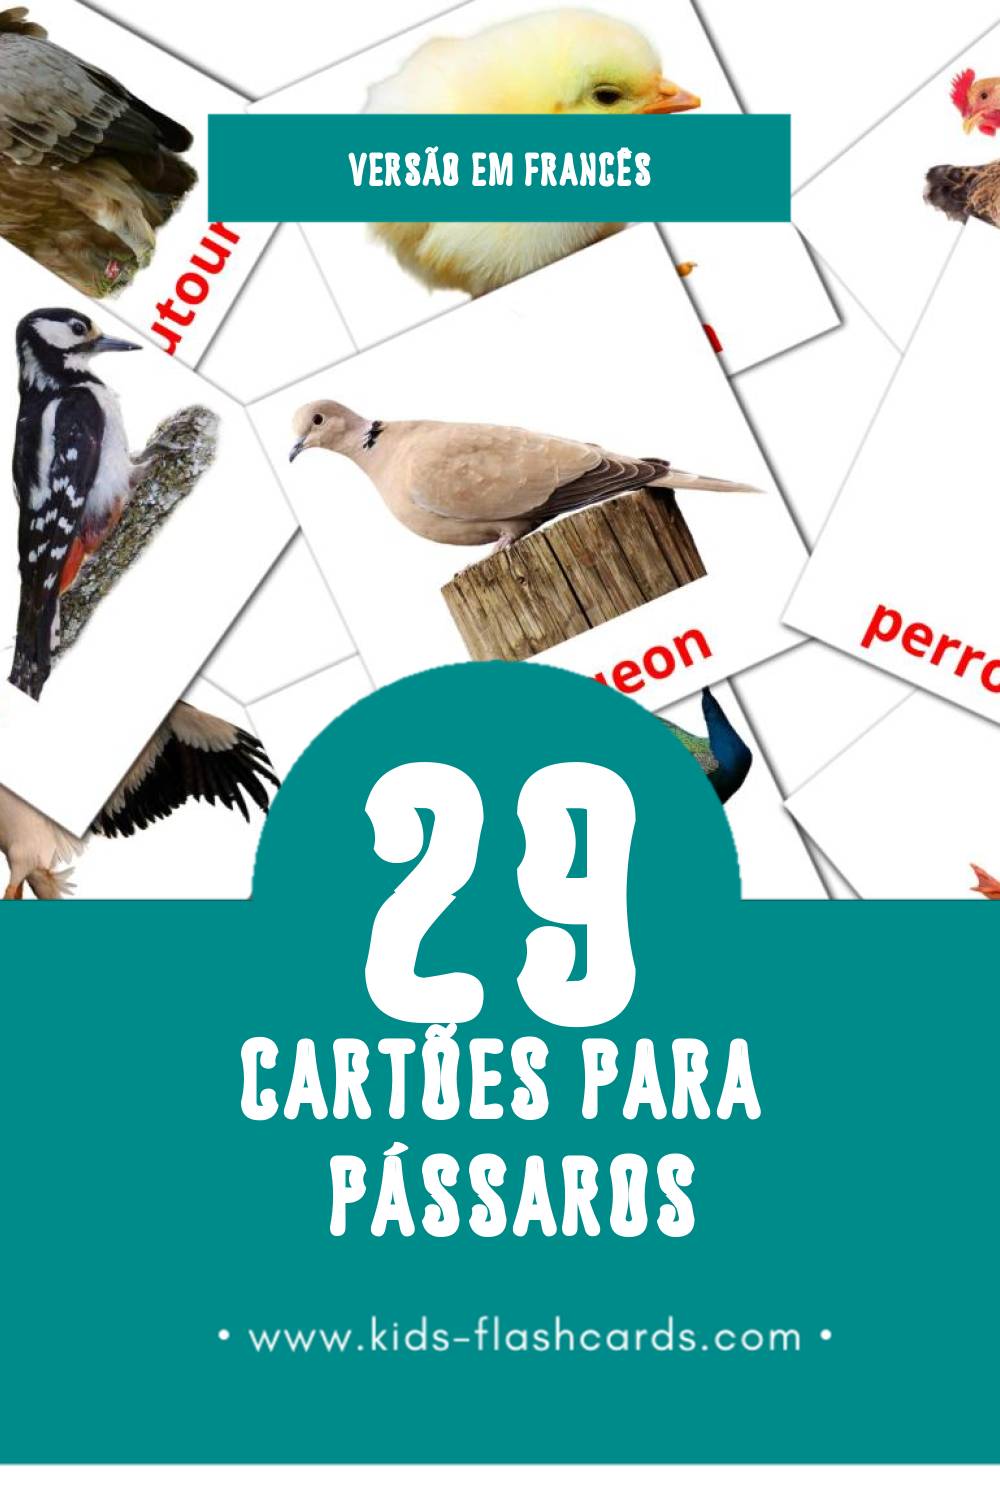 Flashcards de Oiseaux Visuais para Toddlers (29 cartões em Francês)